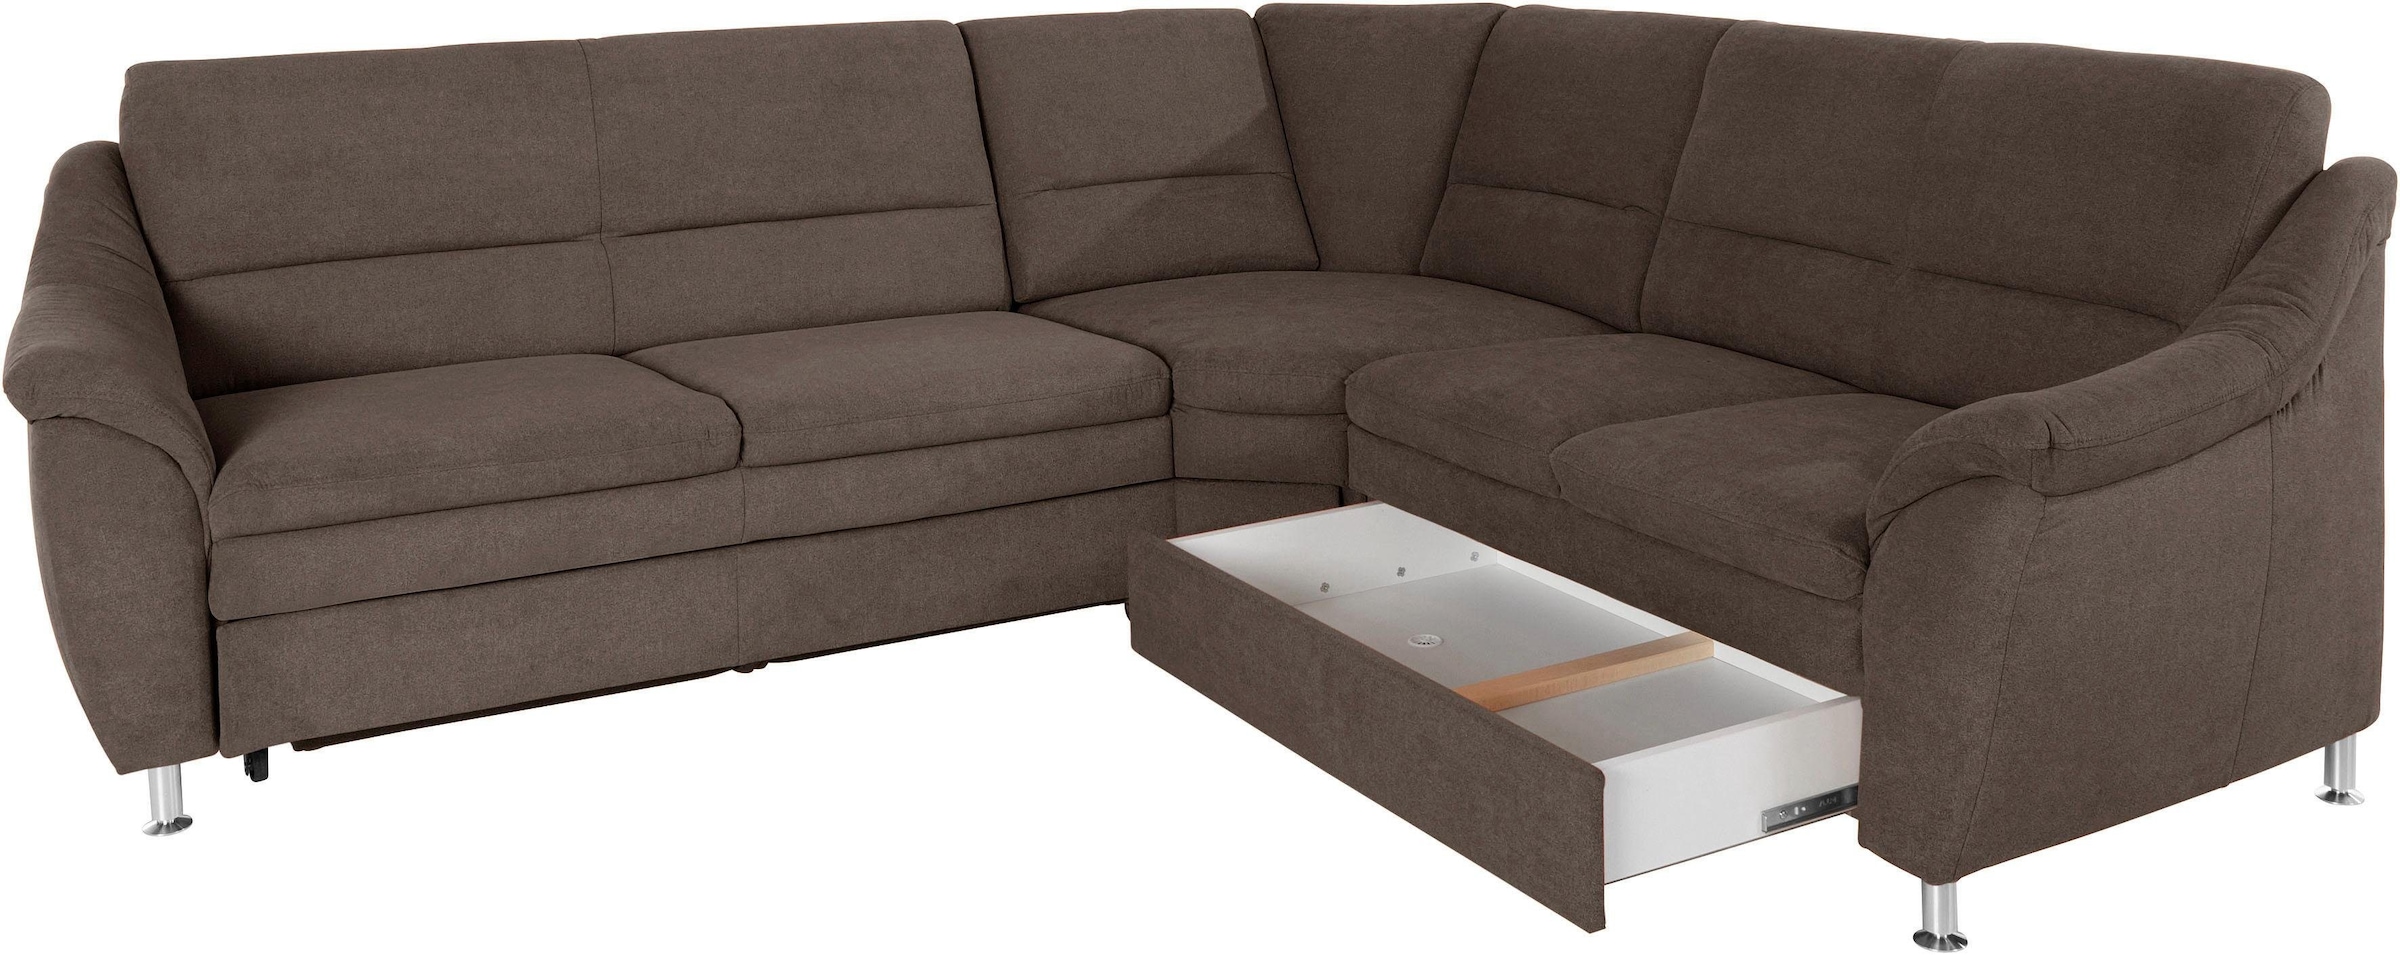 Places of Style Ecksofa »Cardoso L-Form«, mit Trapezecke für mehr Sitzkomfort, wahlweise auch mit Bettfunktion